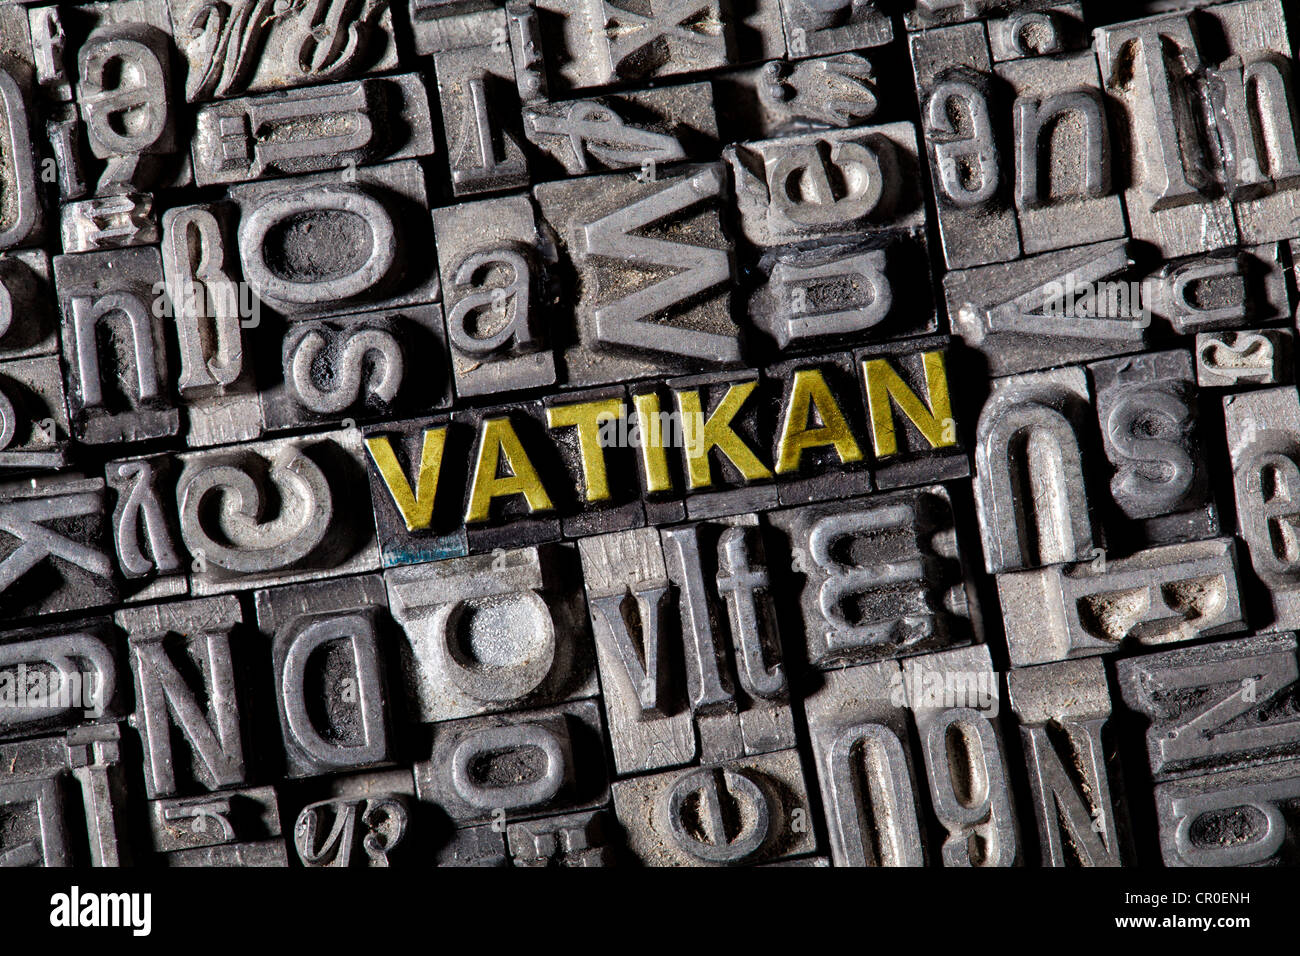 Vecchio portano lettere che compongono la parola Vatikan, tedesco per il Vaticano Foto Stock